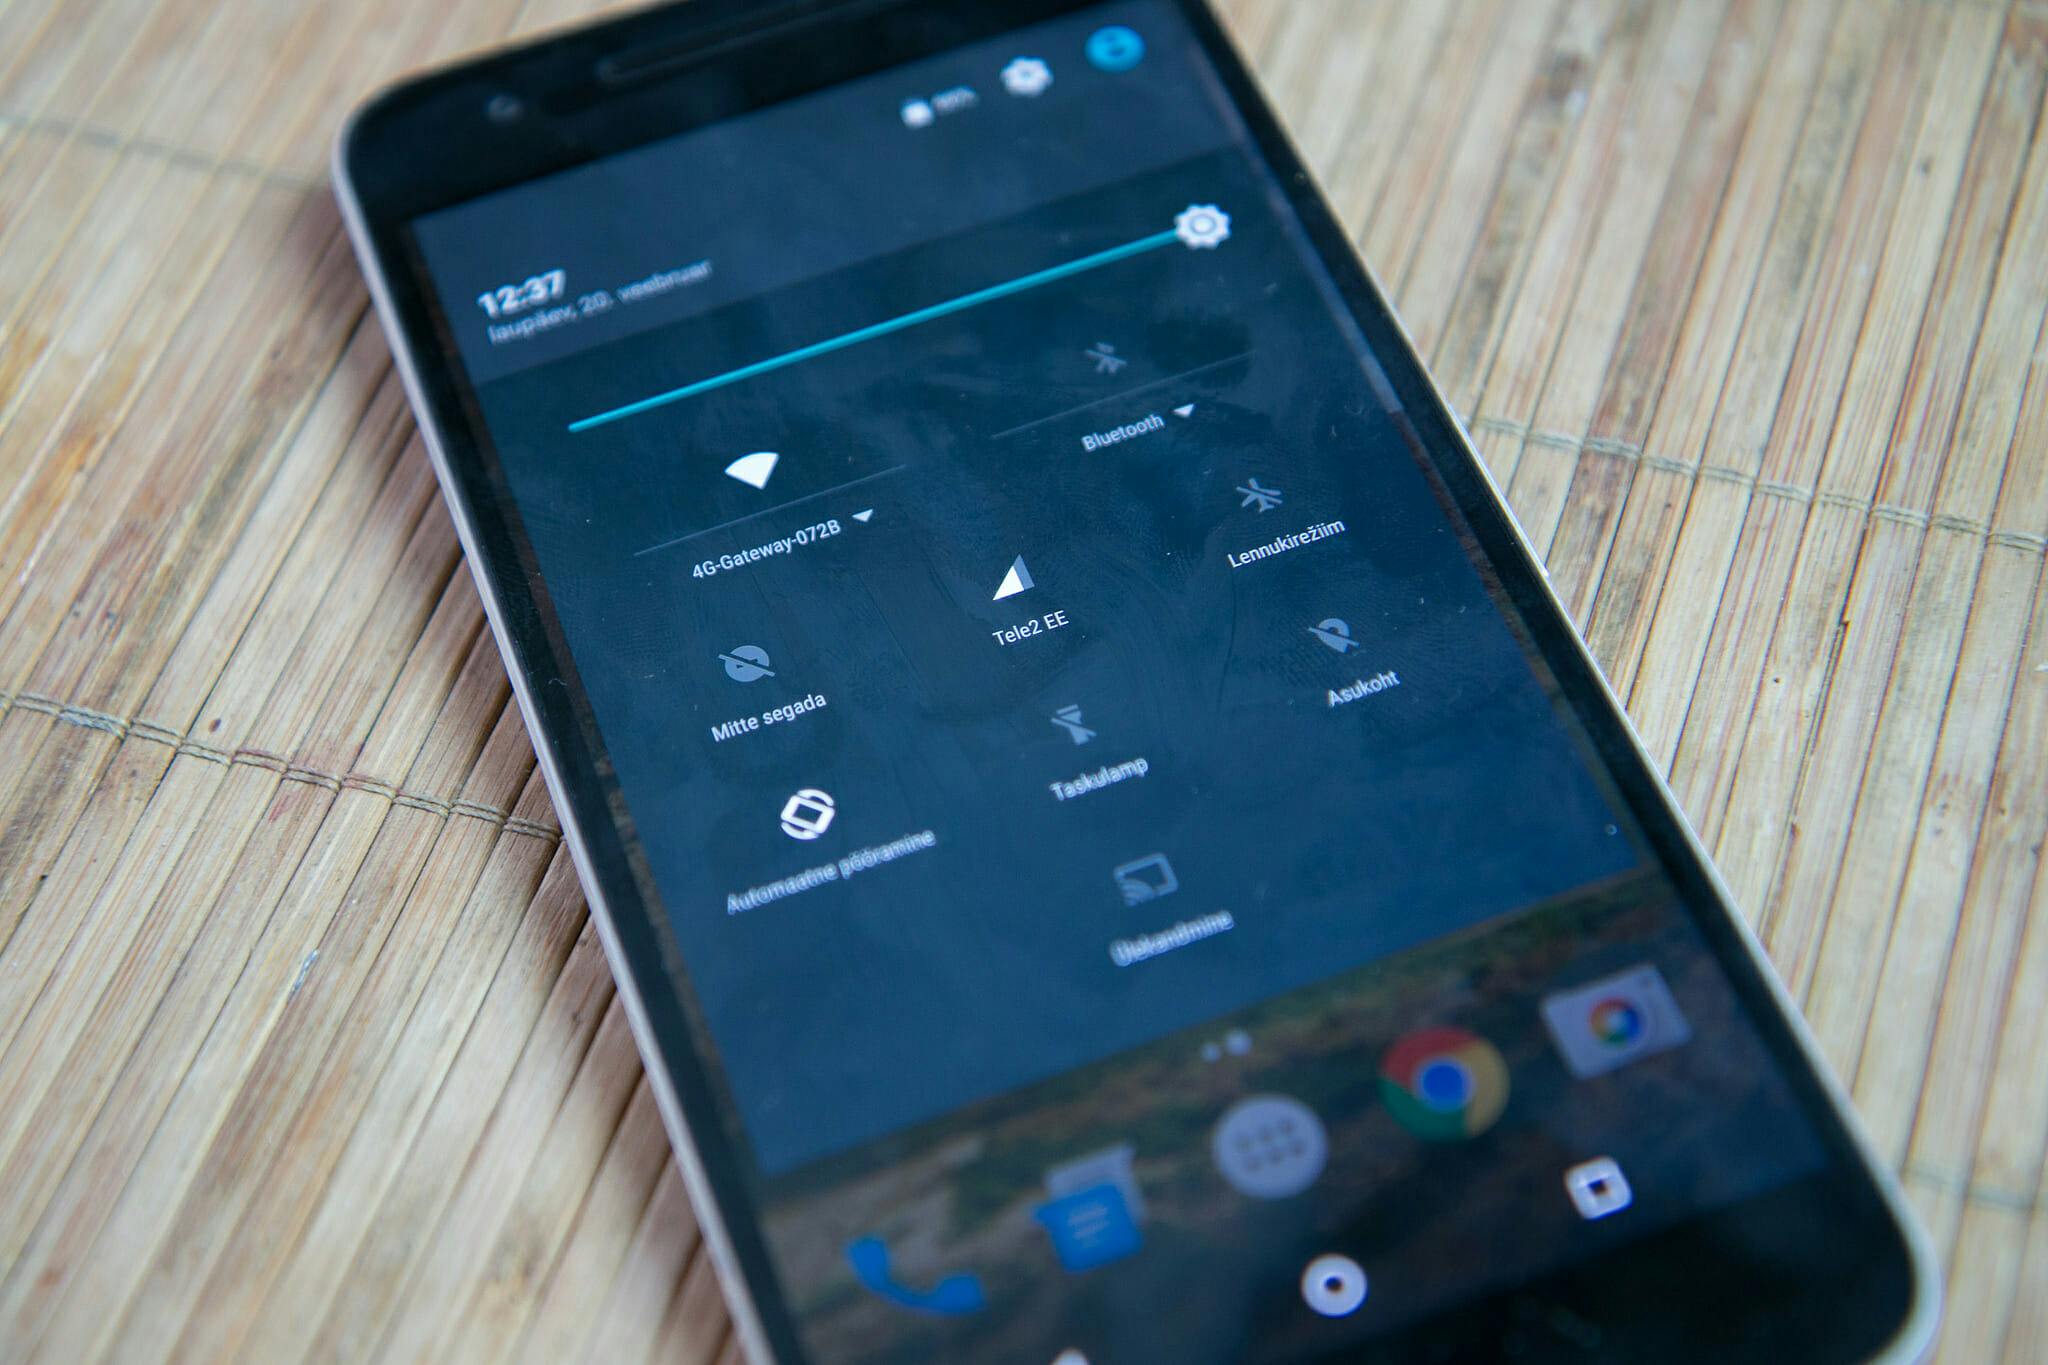 Huawei Nexus 6p screen brightness